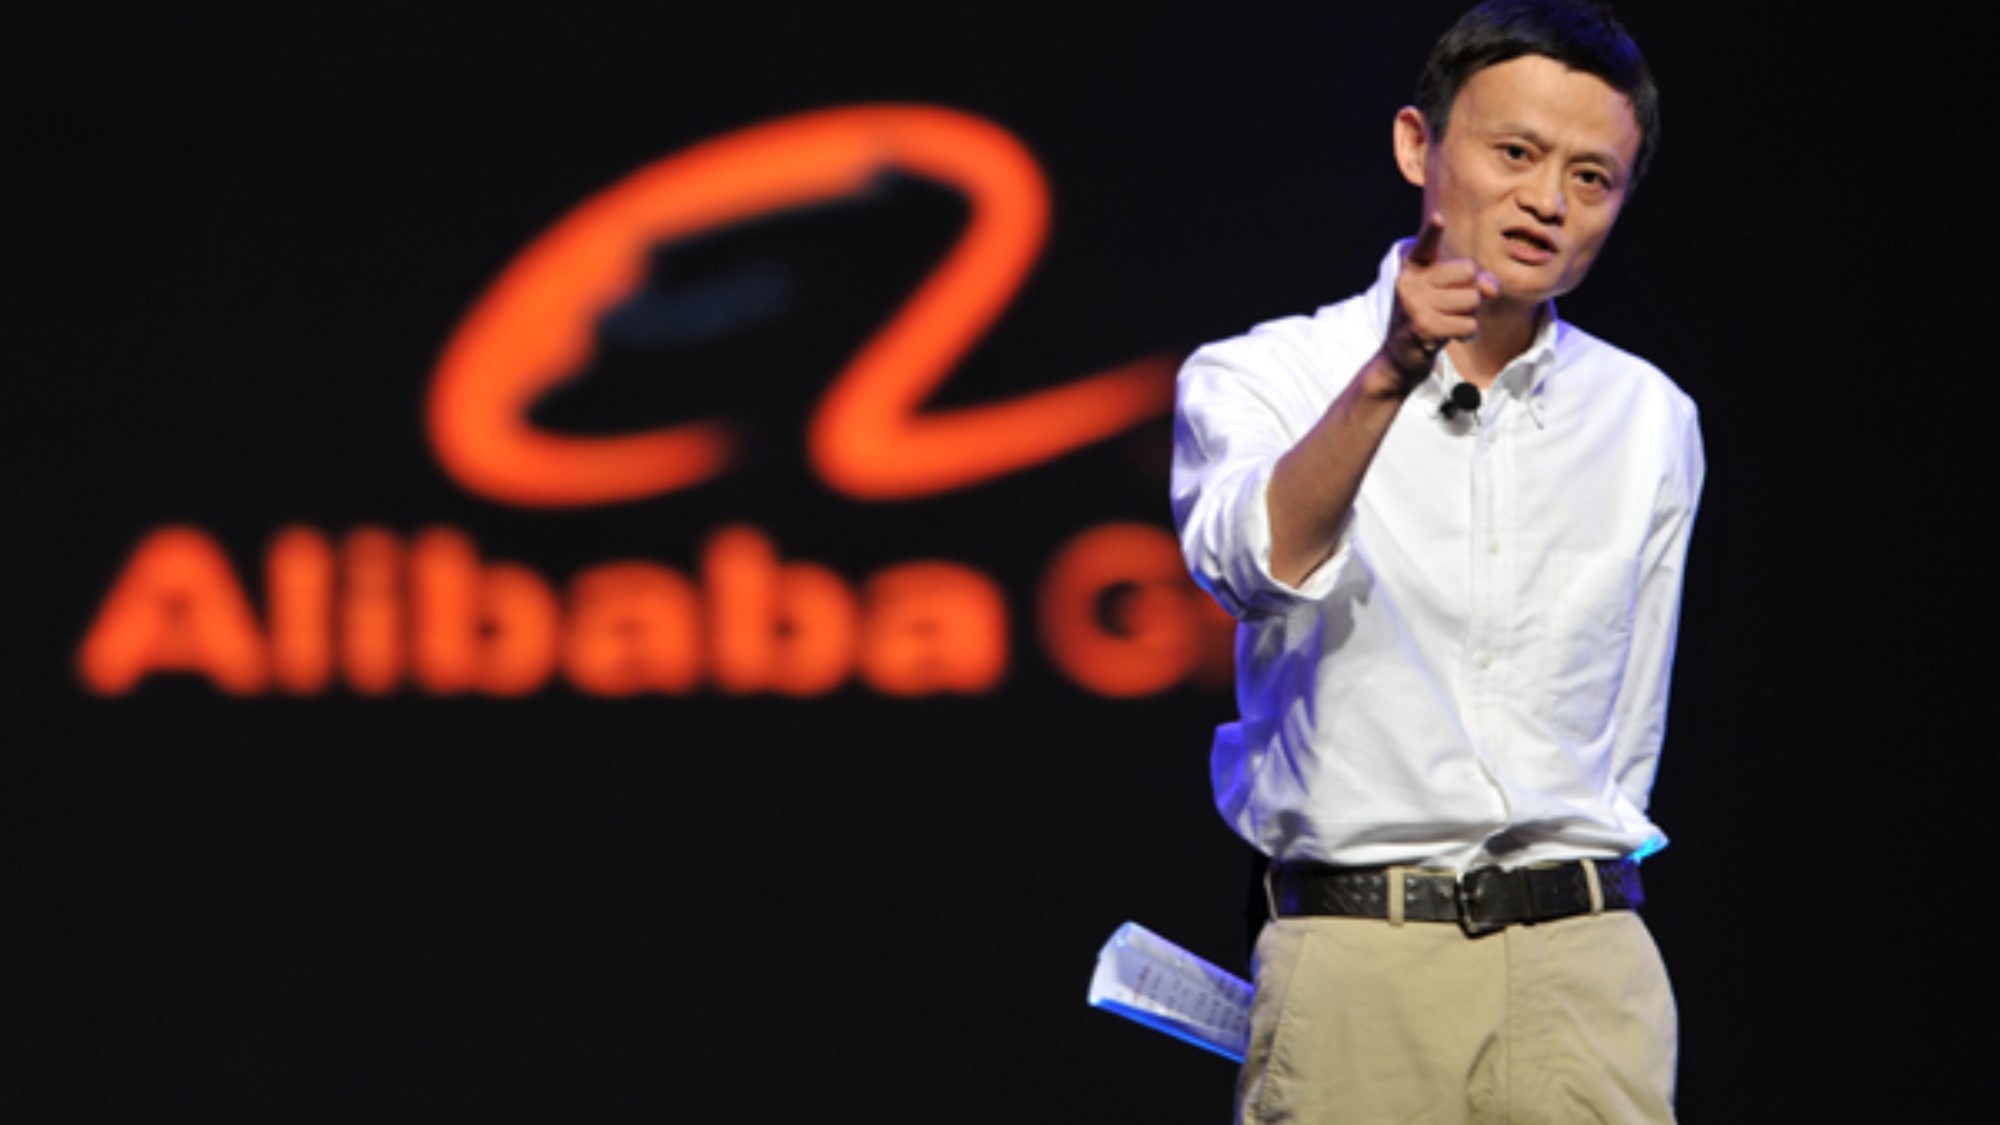 Представитель главы компании Alibaba отрицает его уход на пенсию